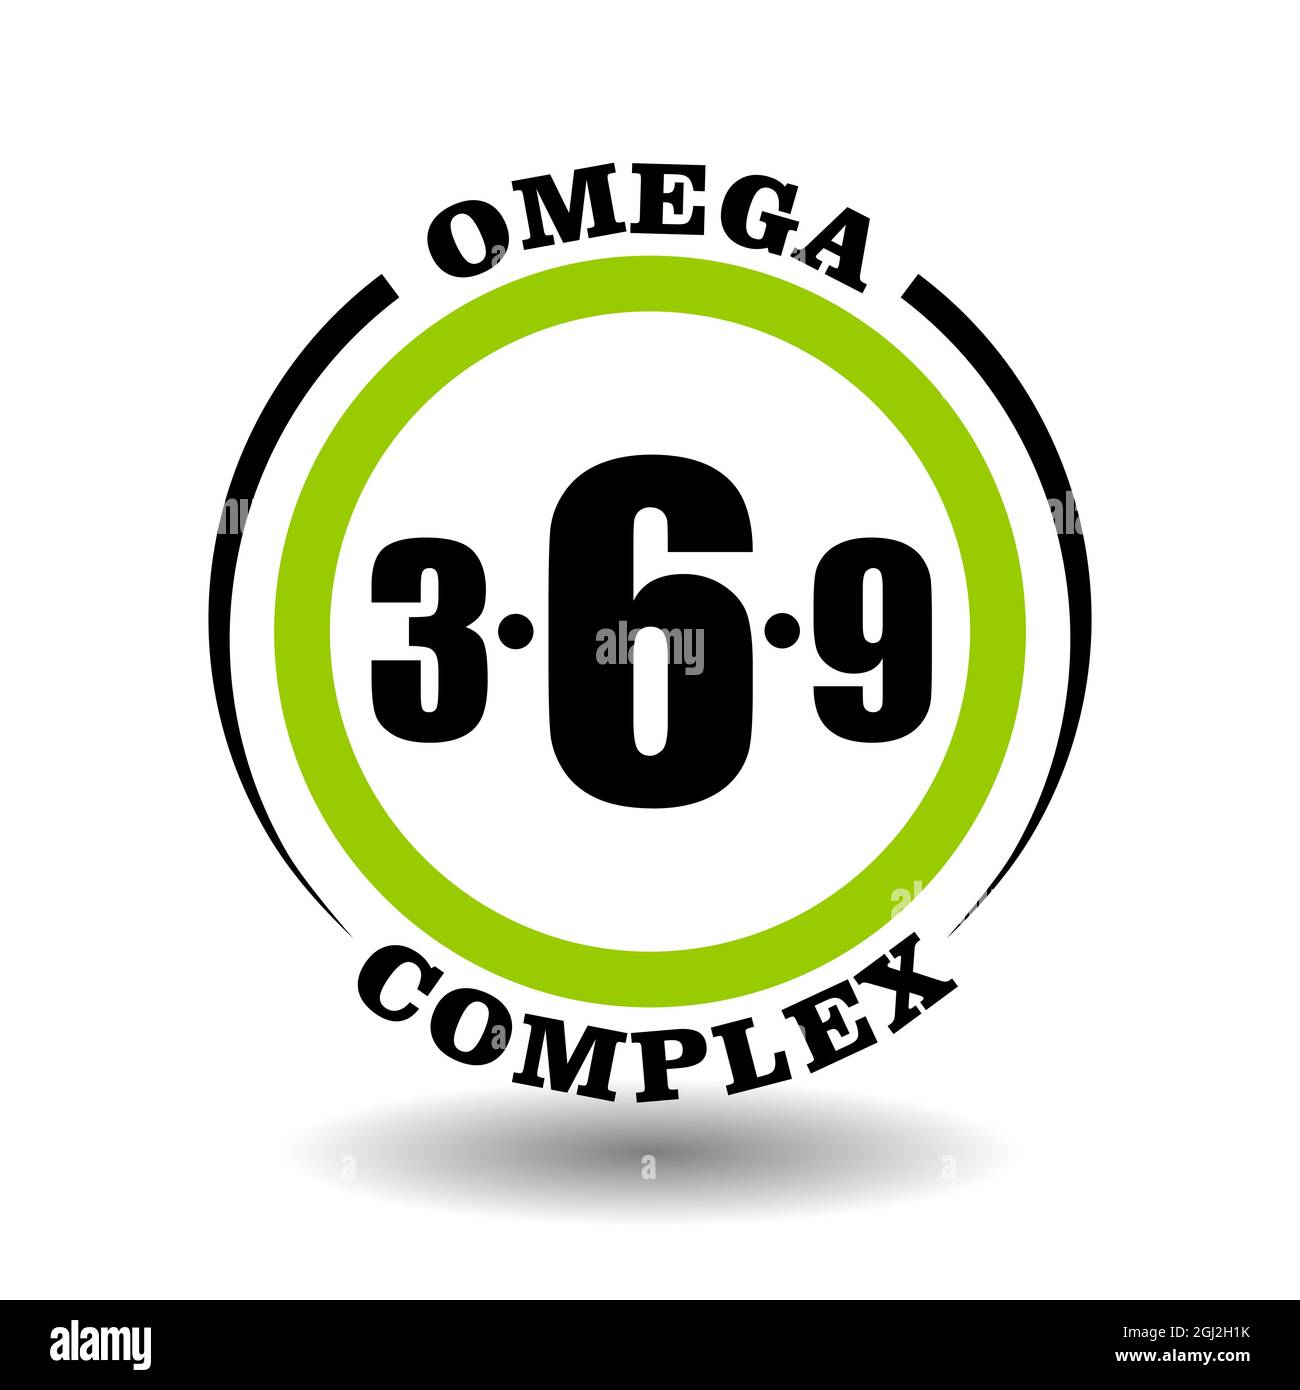 Icône vectorielle circulaire complexe Omega pour emballage les signes du produit contiennent 3, 6, 9 ingrédient oméga dans les aliments sains pictogramme logo avec symbole d'huile de poisson Illustration de Vecteur